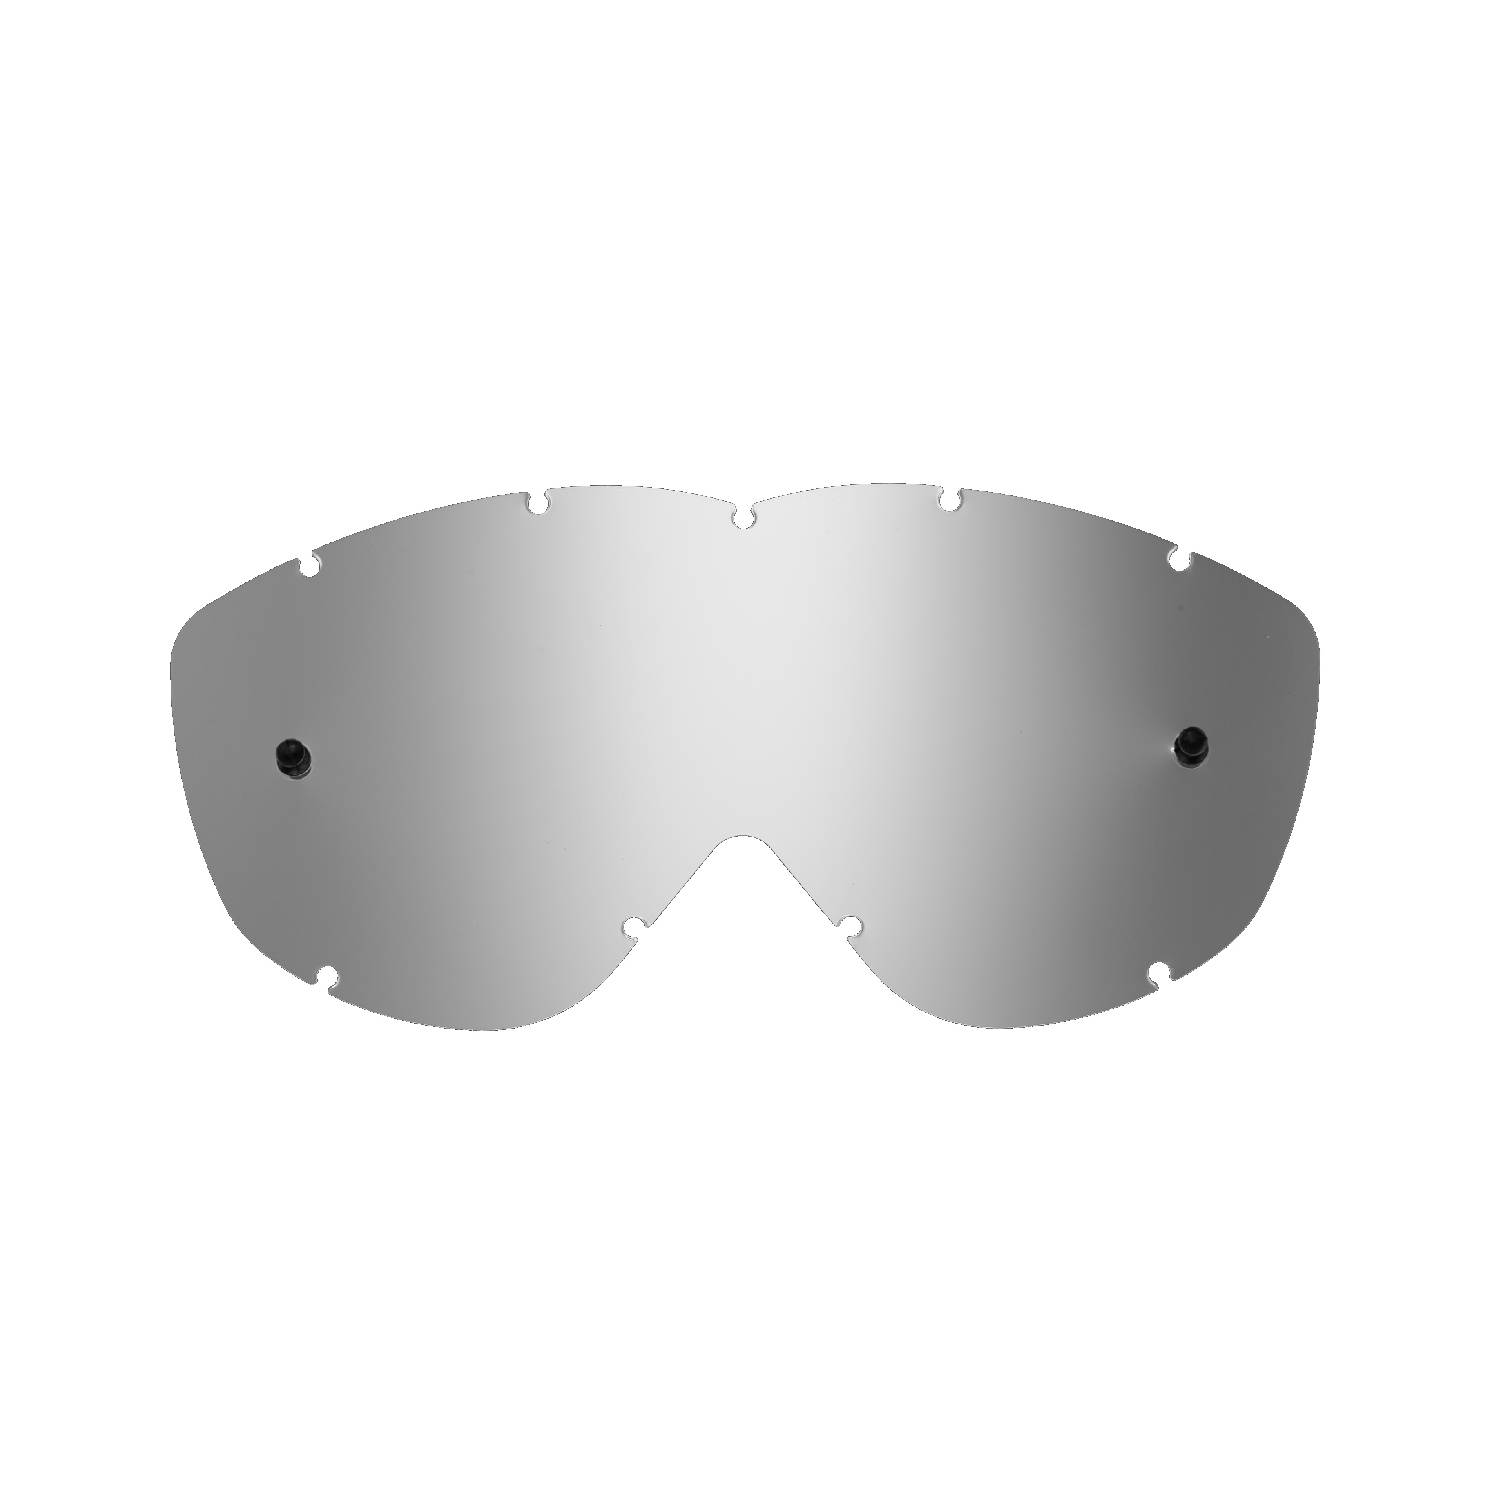 Lente di ricambio argento specchiato compatibile per occhiale/maschera Spy Alloy / Targa